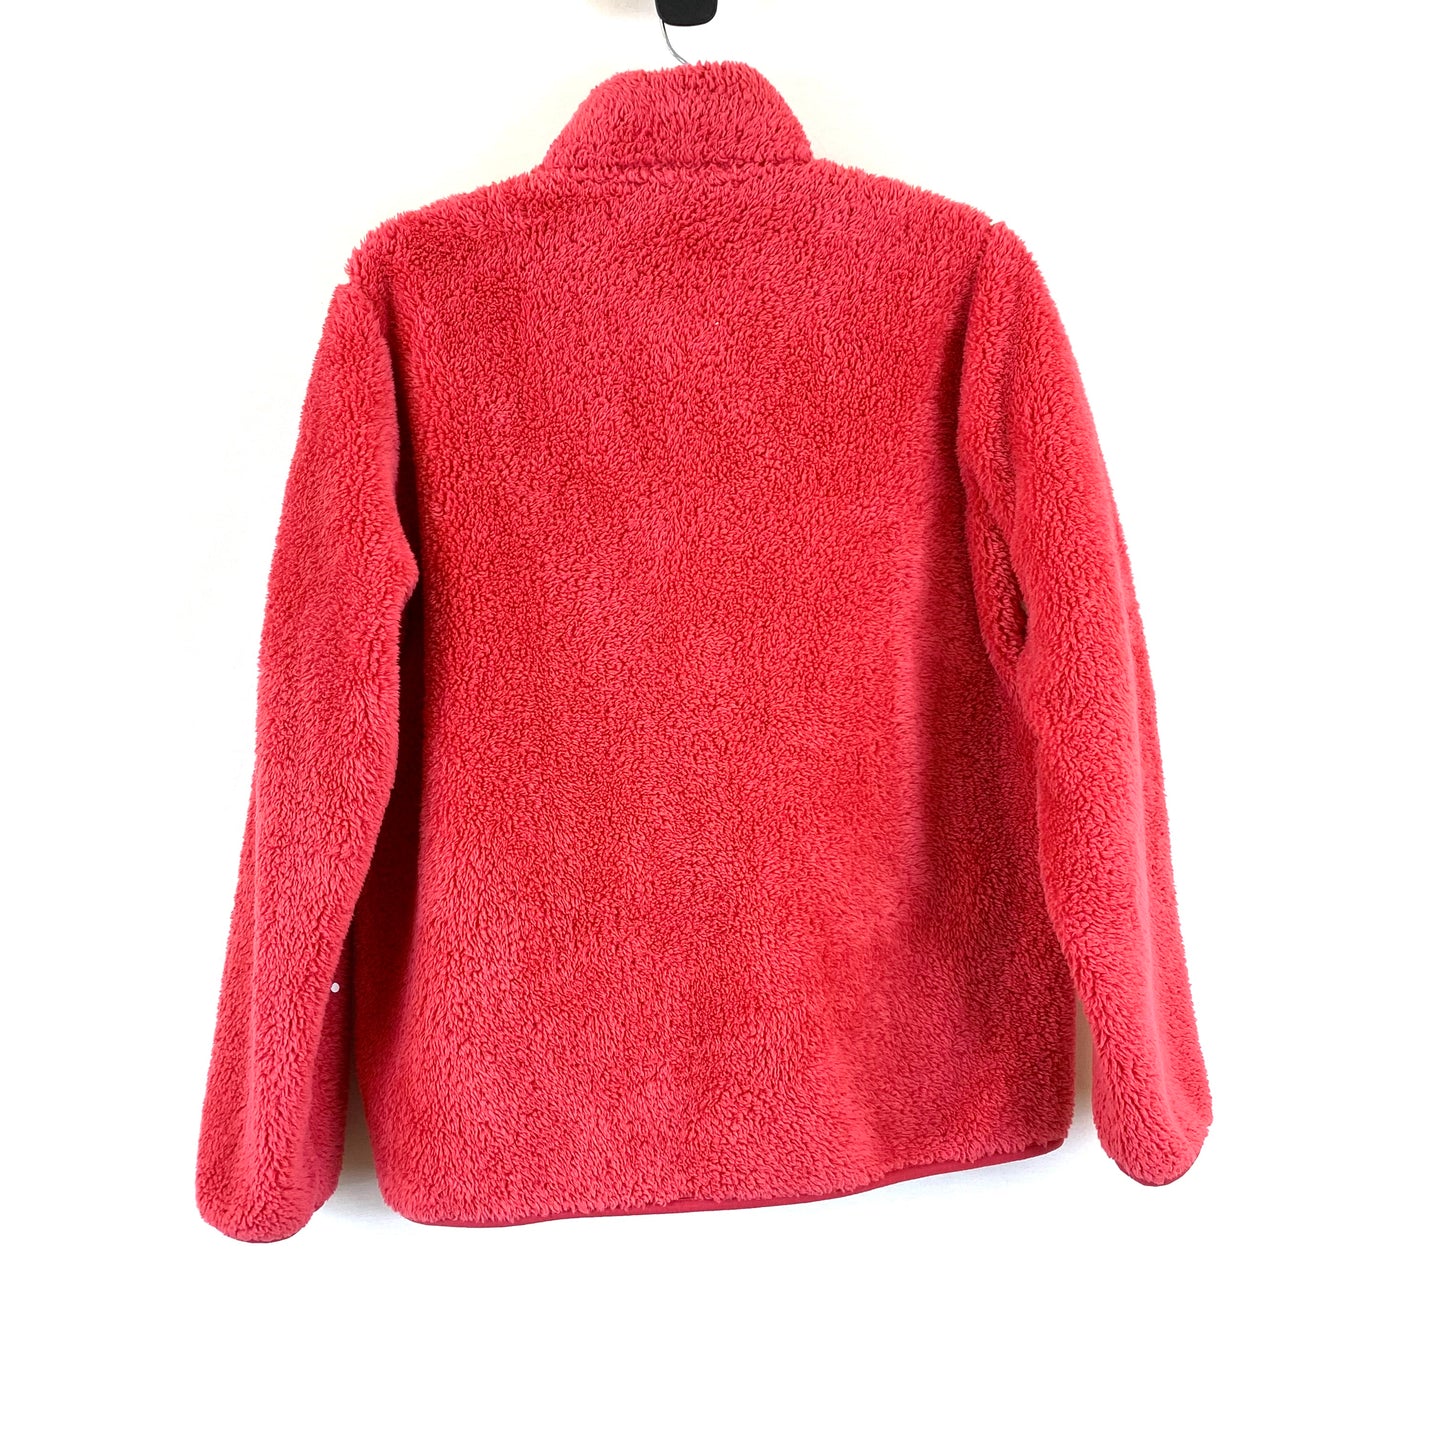 Jacket Fleece By Uniqlo  Size: L